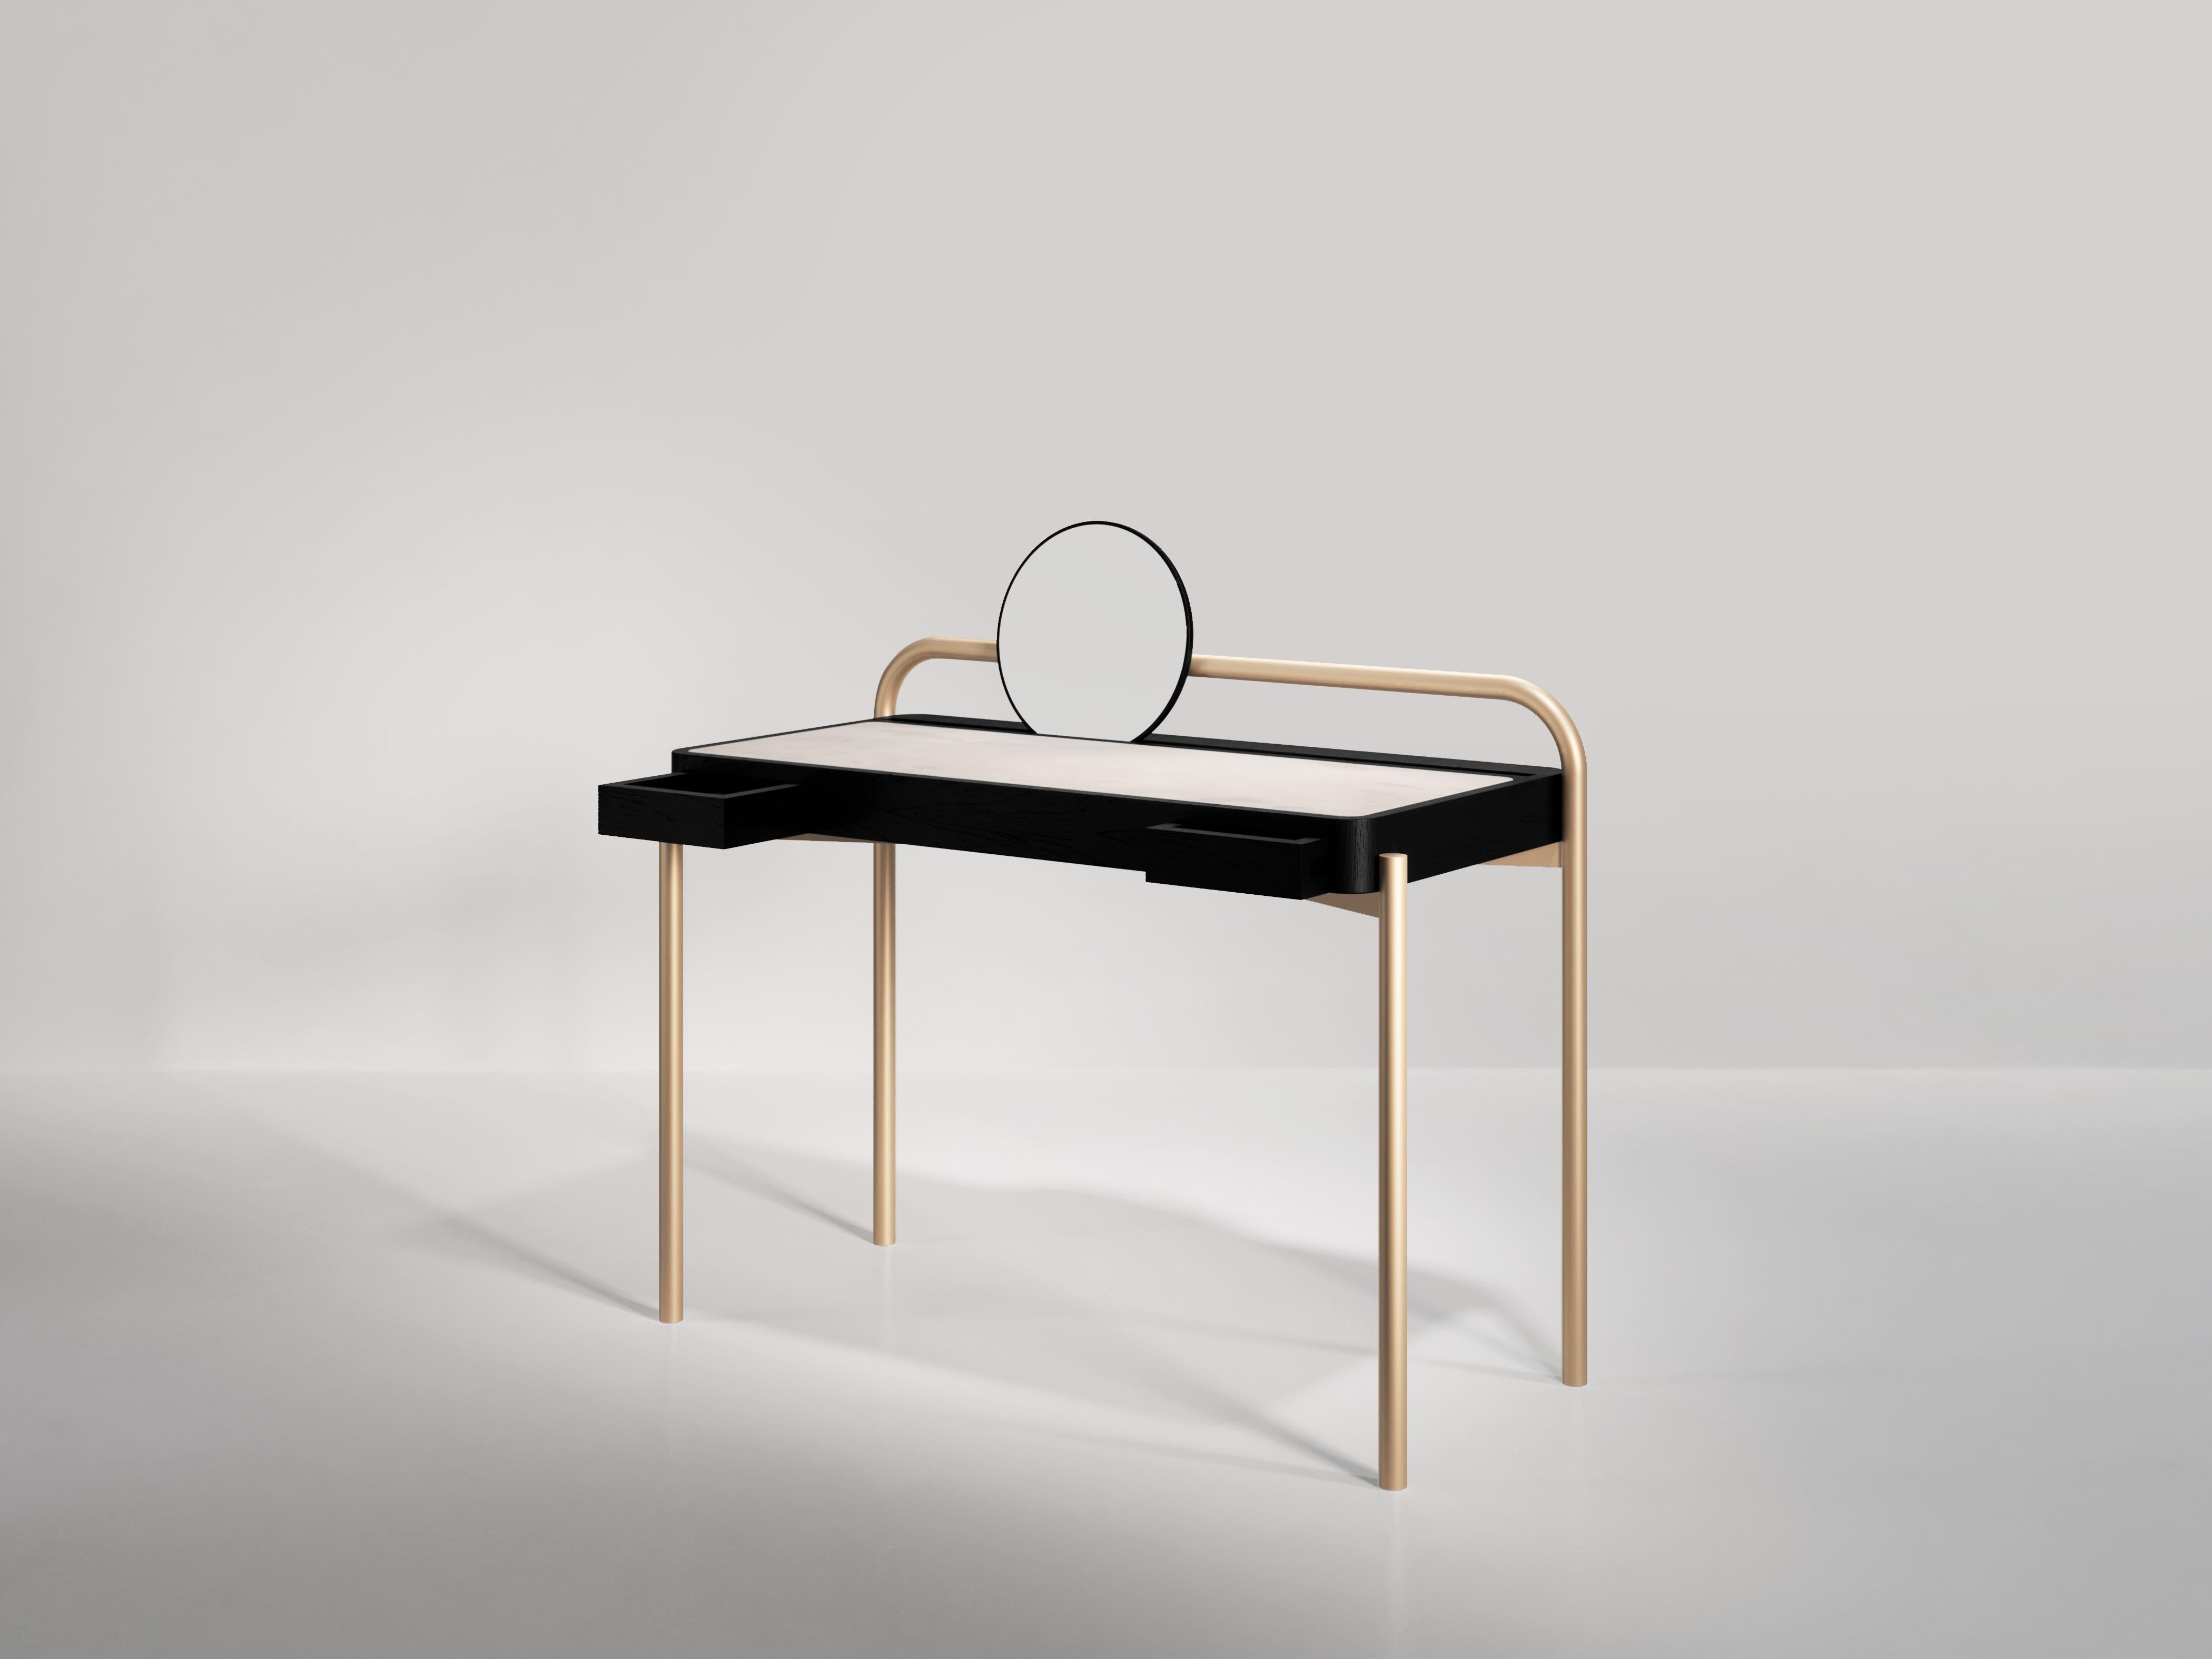 Tagsüber ein Schreibtisch, nachts ein Frisiertisch: Roll Desk 02 ist ein minimalistisches Stück mit vier Metallbeinen, die eine massive Holzplatte tragen. Die Oberseite ist mit Wildleder oder Leder gepolstert und ermöglicht eine einfache und bequeme